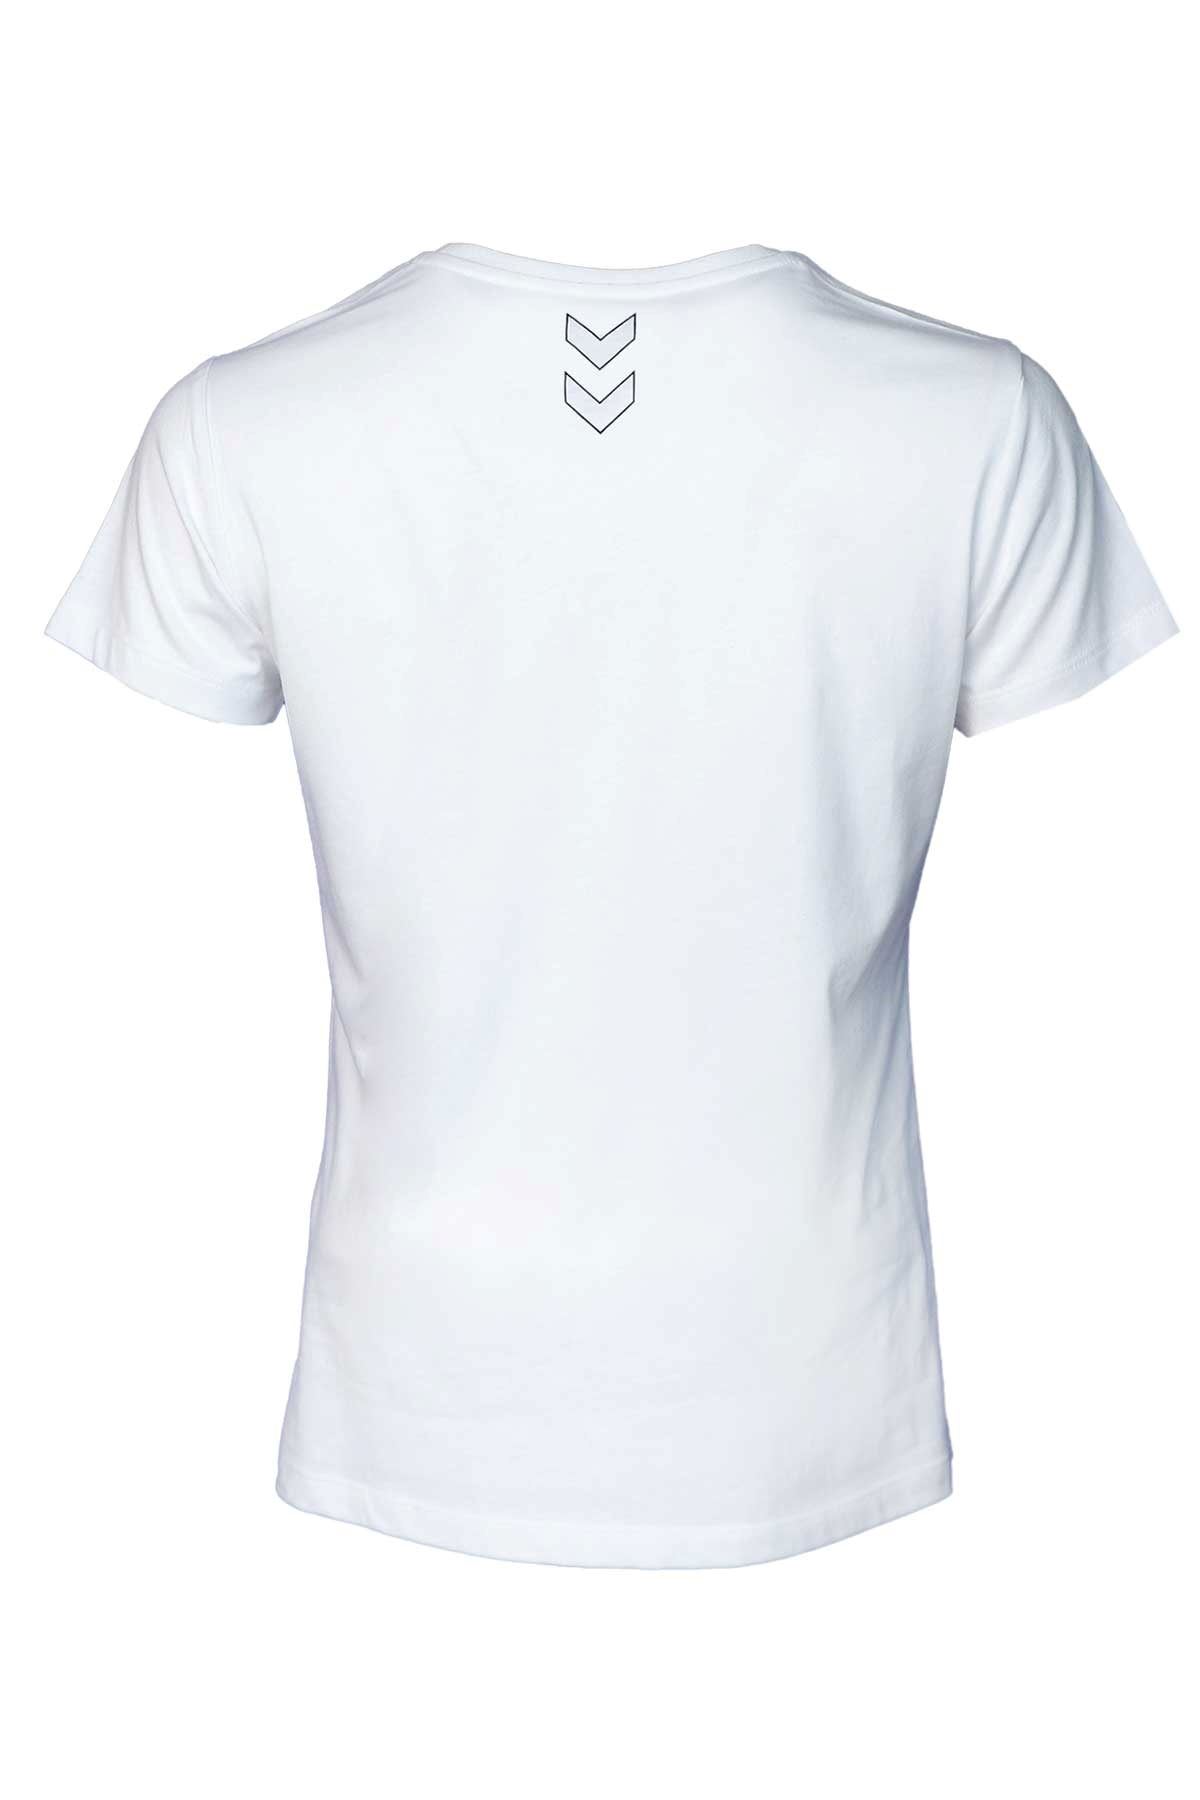 Hummel Hmlt-Te Mına Cotton T-Shırt Kadın Beyaz Tişört - 911706-9001